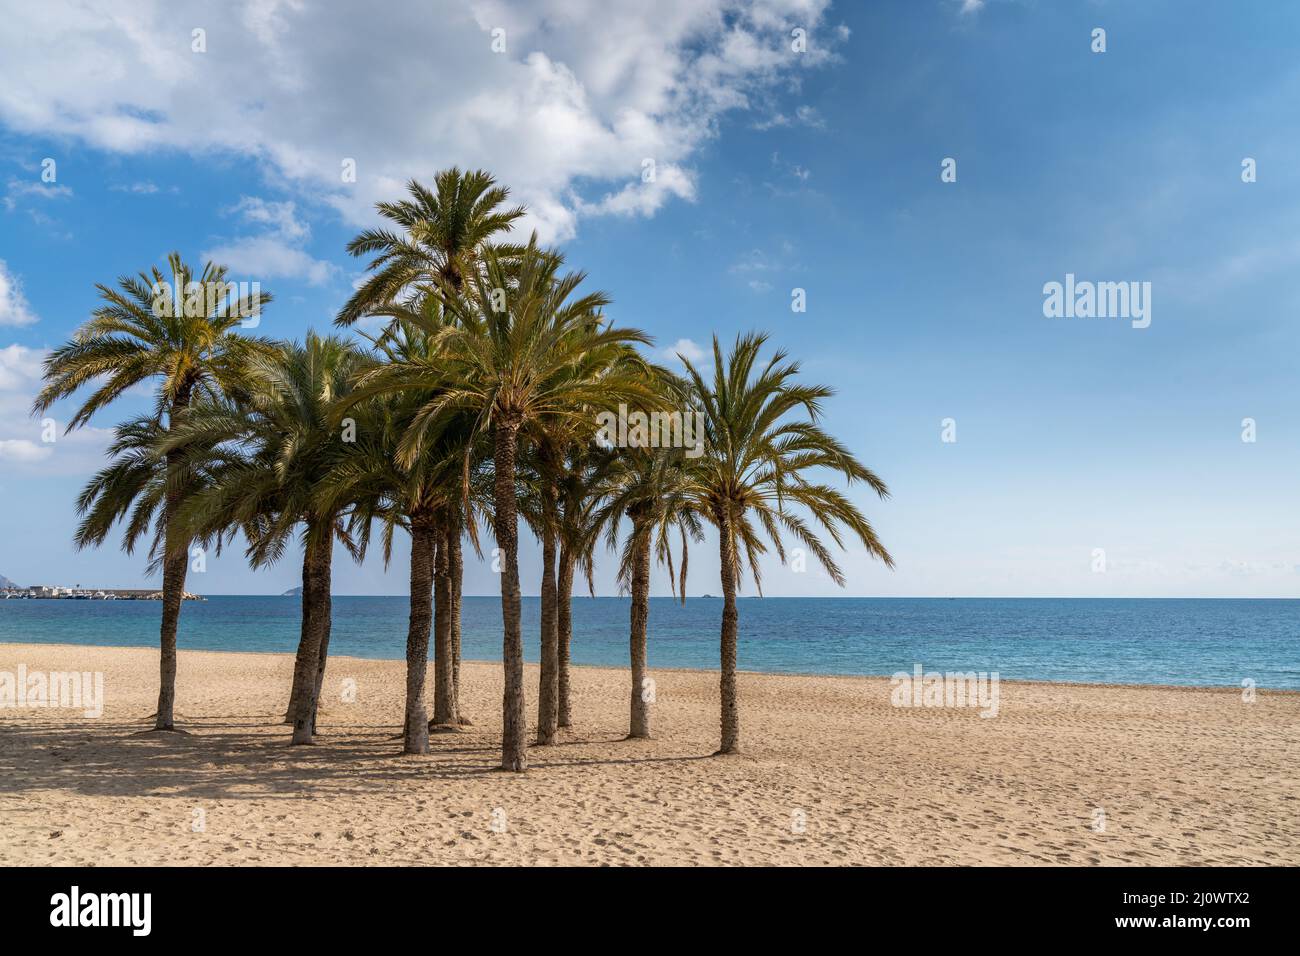 Eine Gruppe üppig grüner Palmen an einem abgeschiedenen goldenen Sandstrand mit ruhigem Meer dahinter Stockfoto